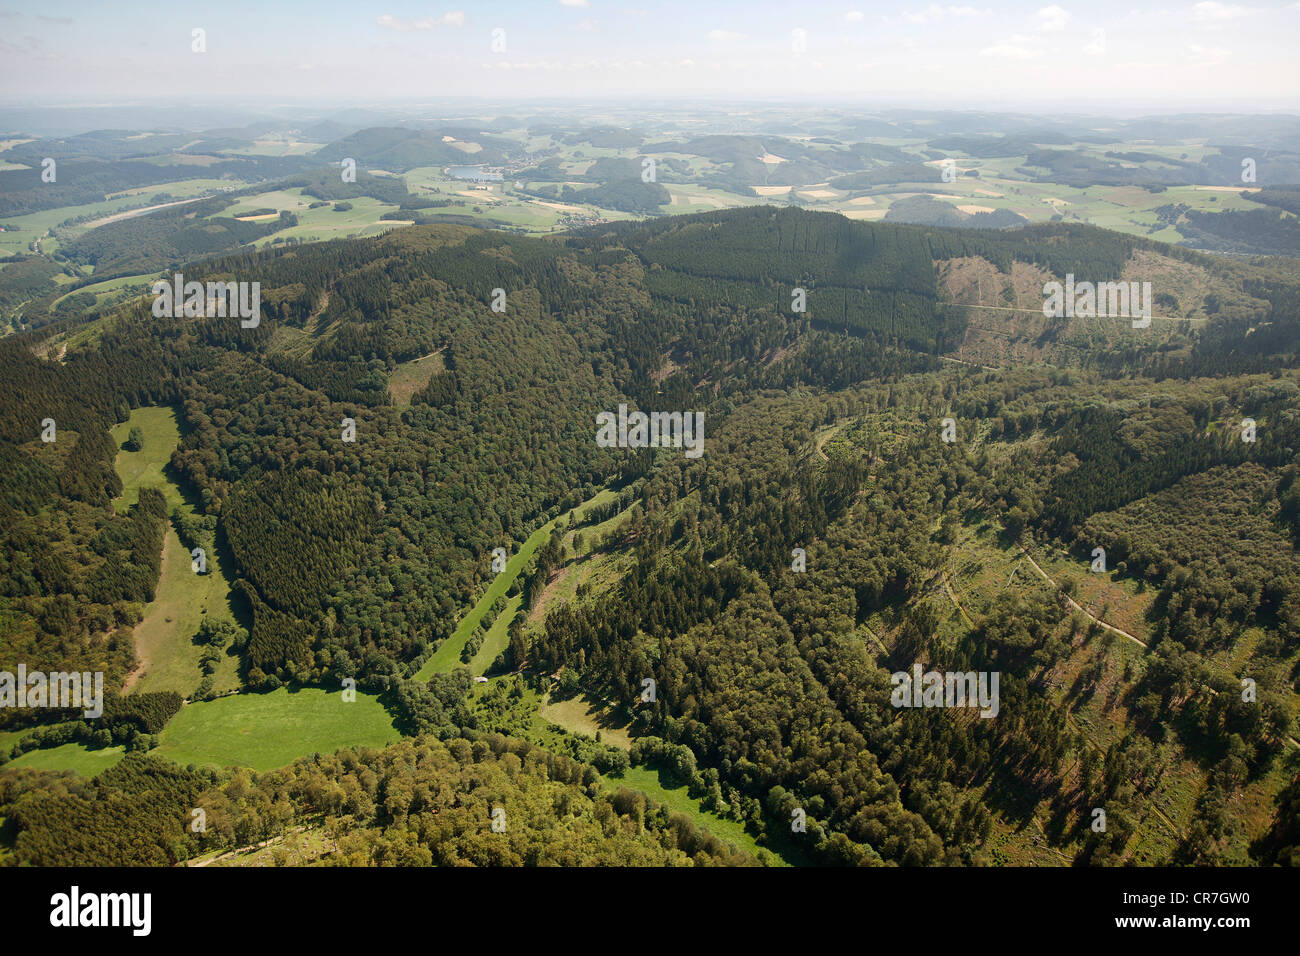 Vista aerea, Diemelsee Nature Park, il parco nazionale delle foreste di faggio, Sito Patrimonio Mondiale dell'UNESCO, Willingen Upland, Sauerland Foto Stock